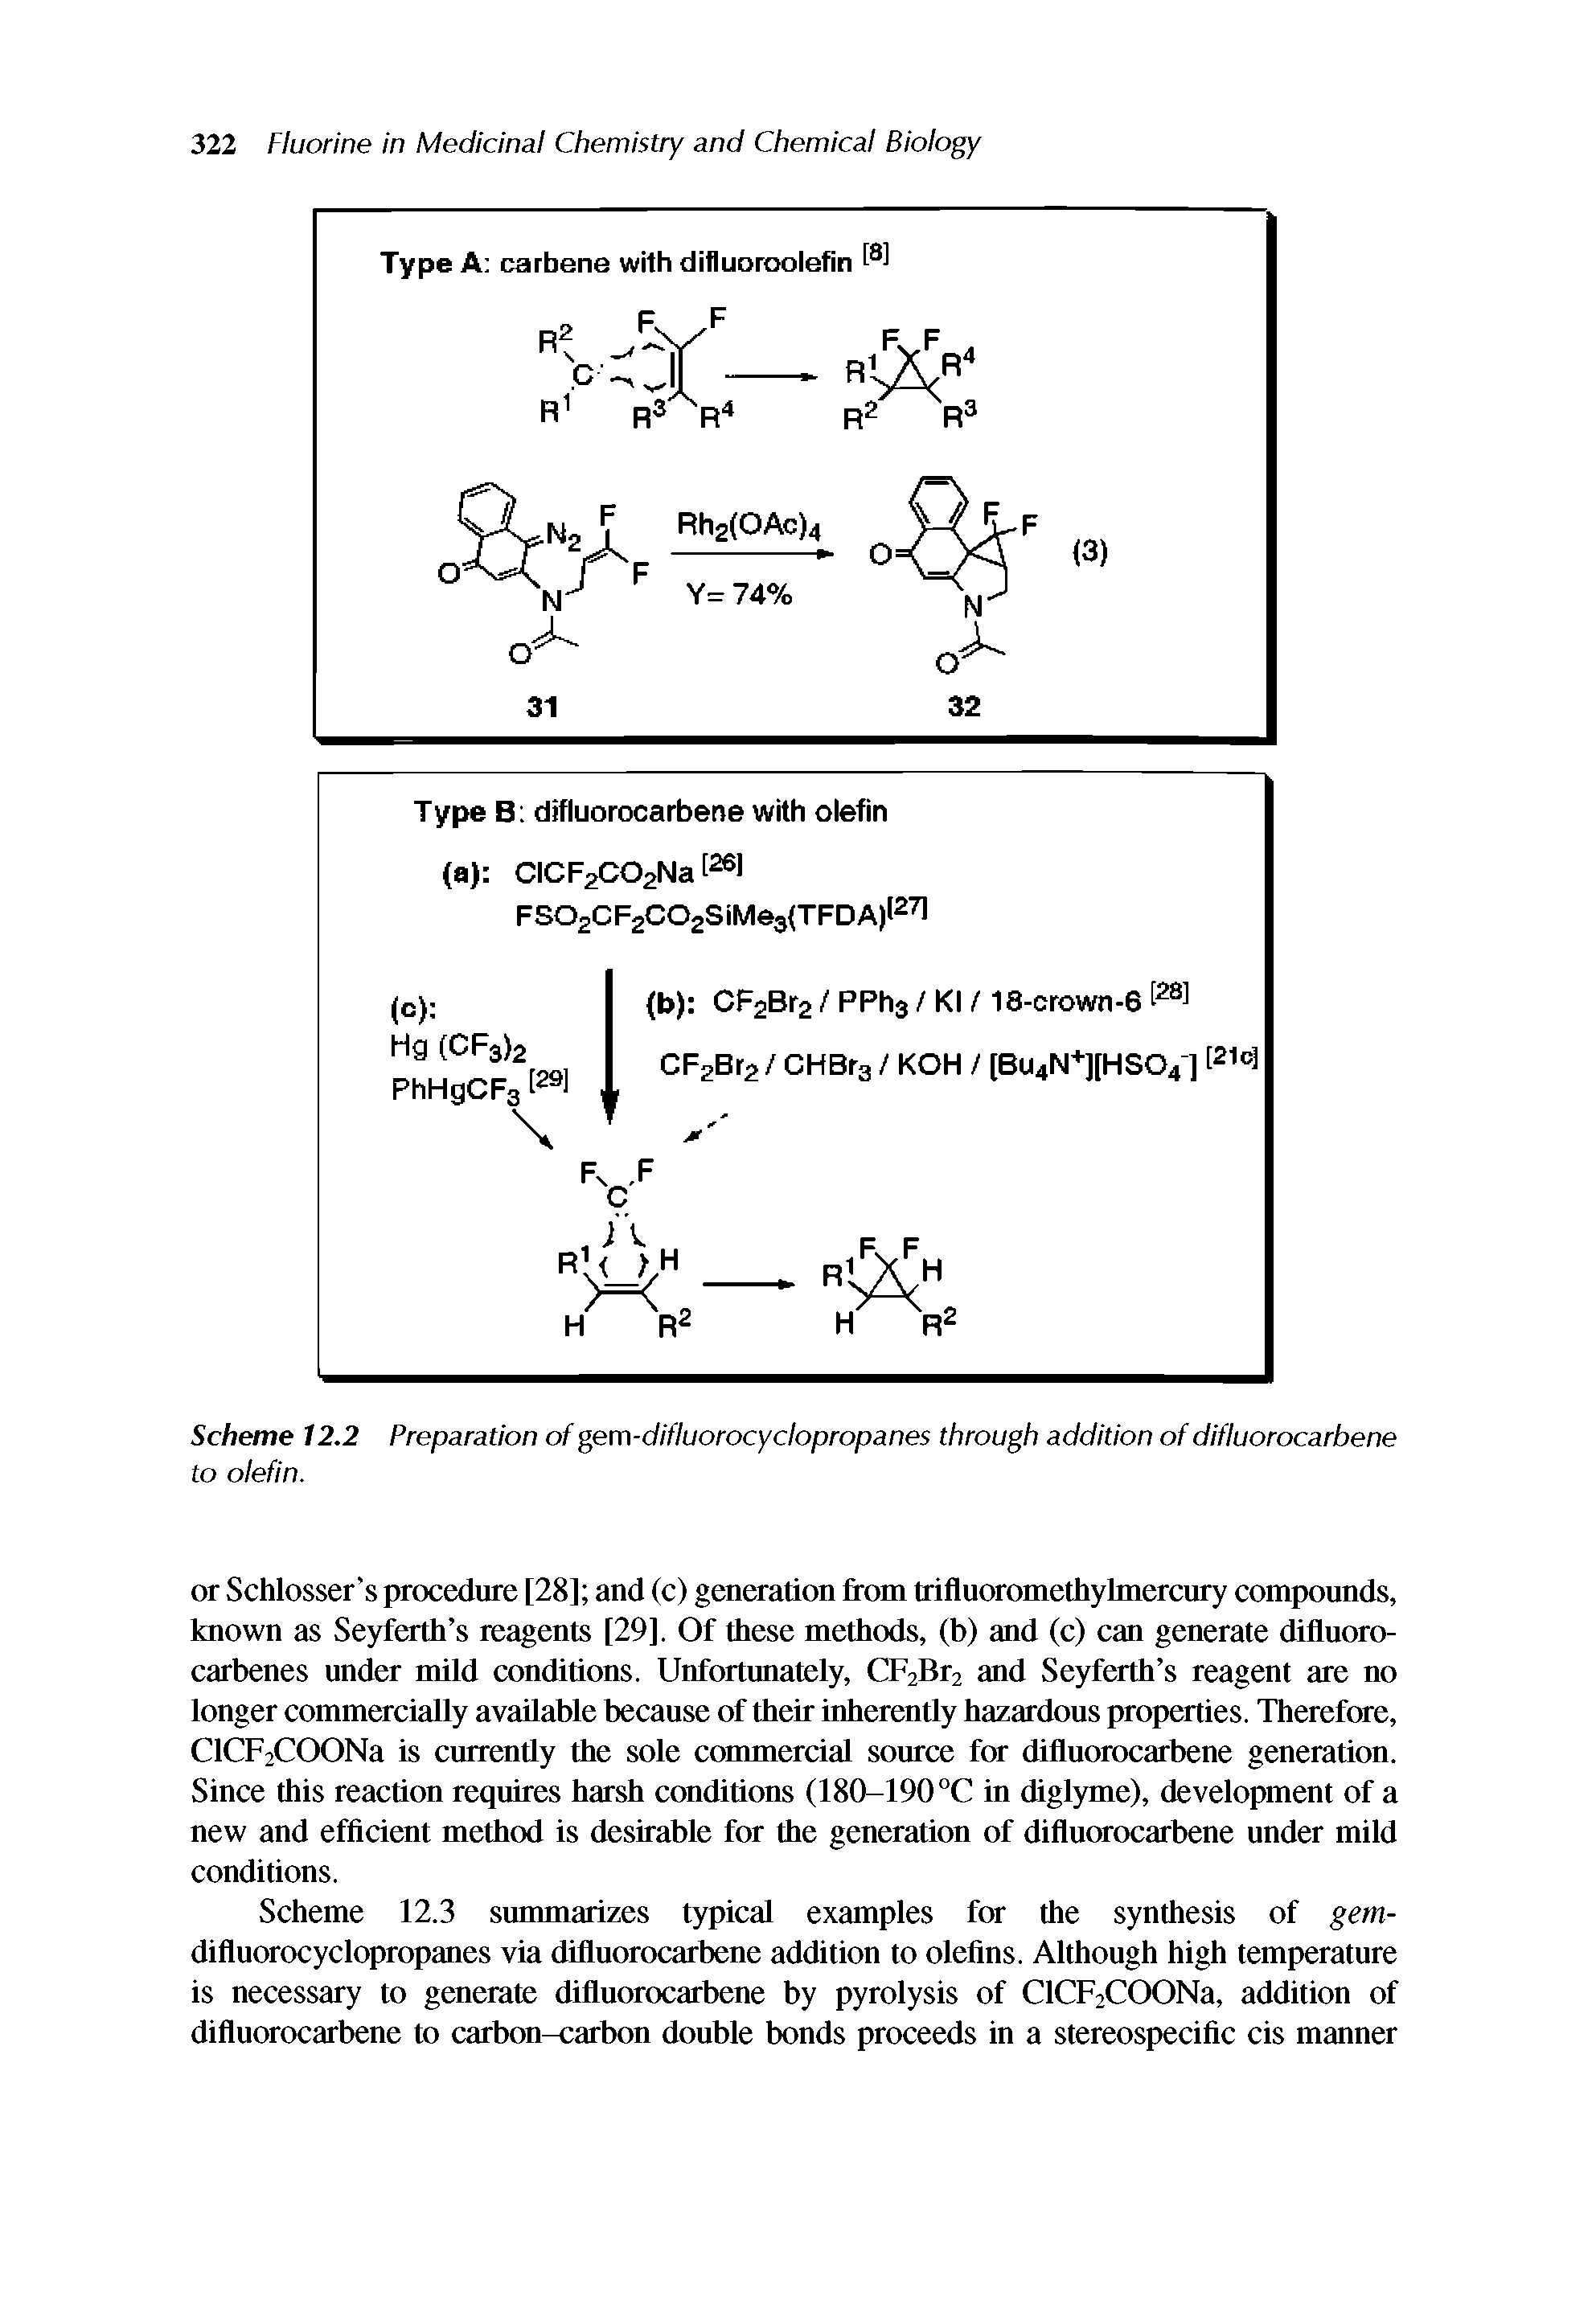 Scheme 12.2 Preparation of gem-difluorocyclopropanes through addition of difluorocarbene to olefin.